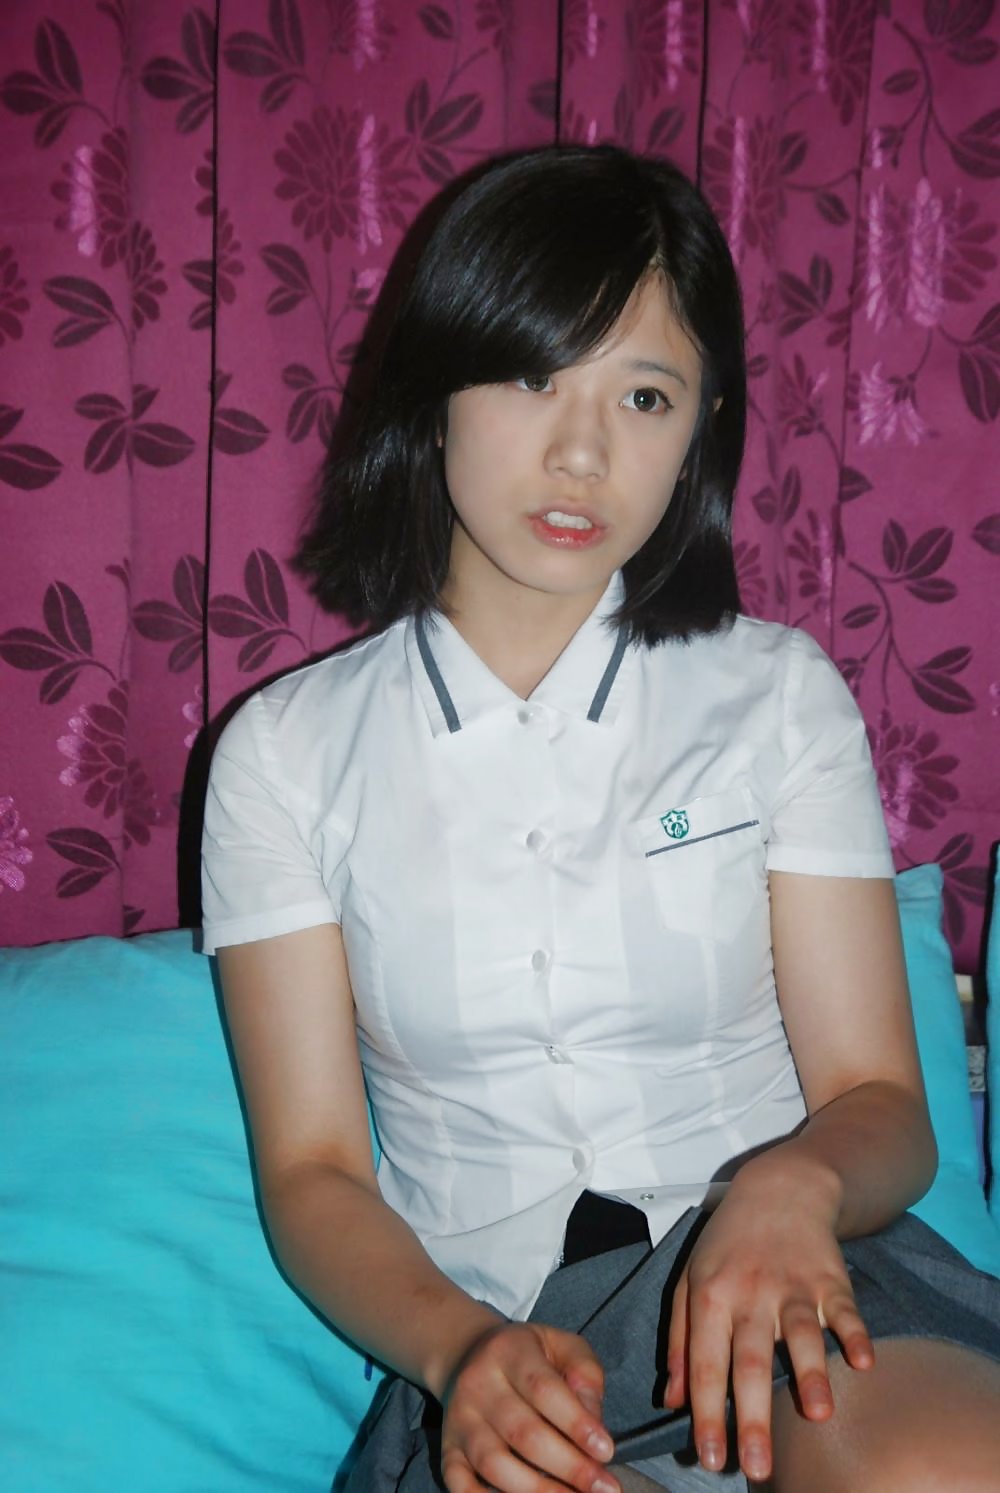 Amateur Asians Korean Teen 8736 Hot Sex Picture picture